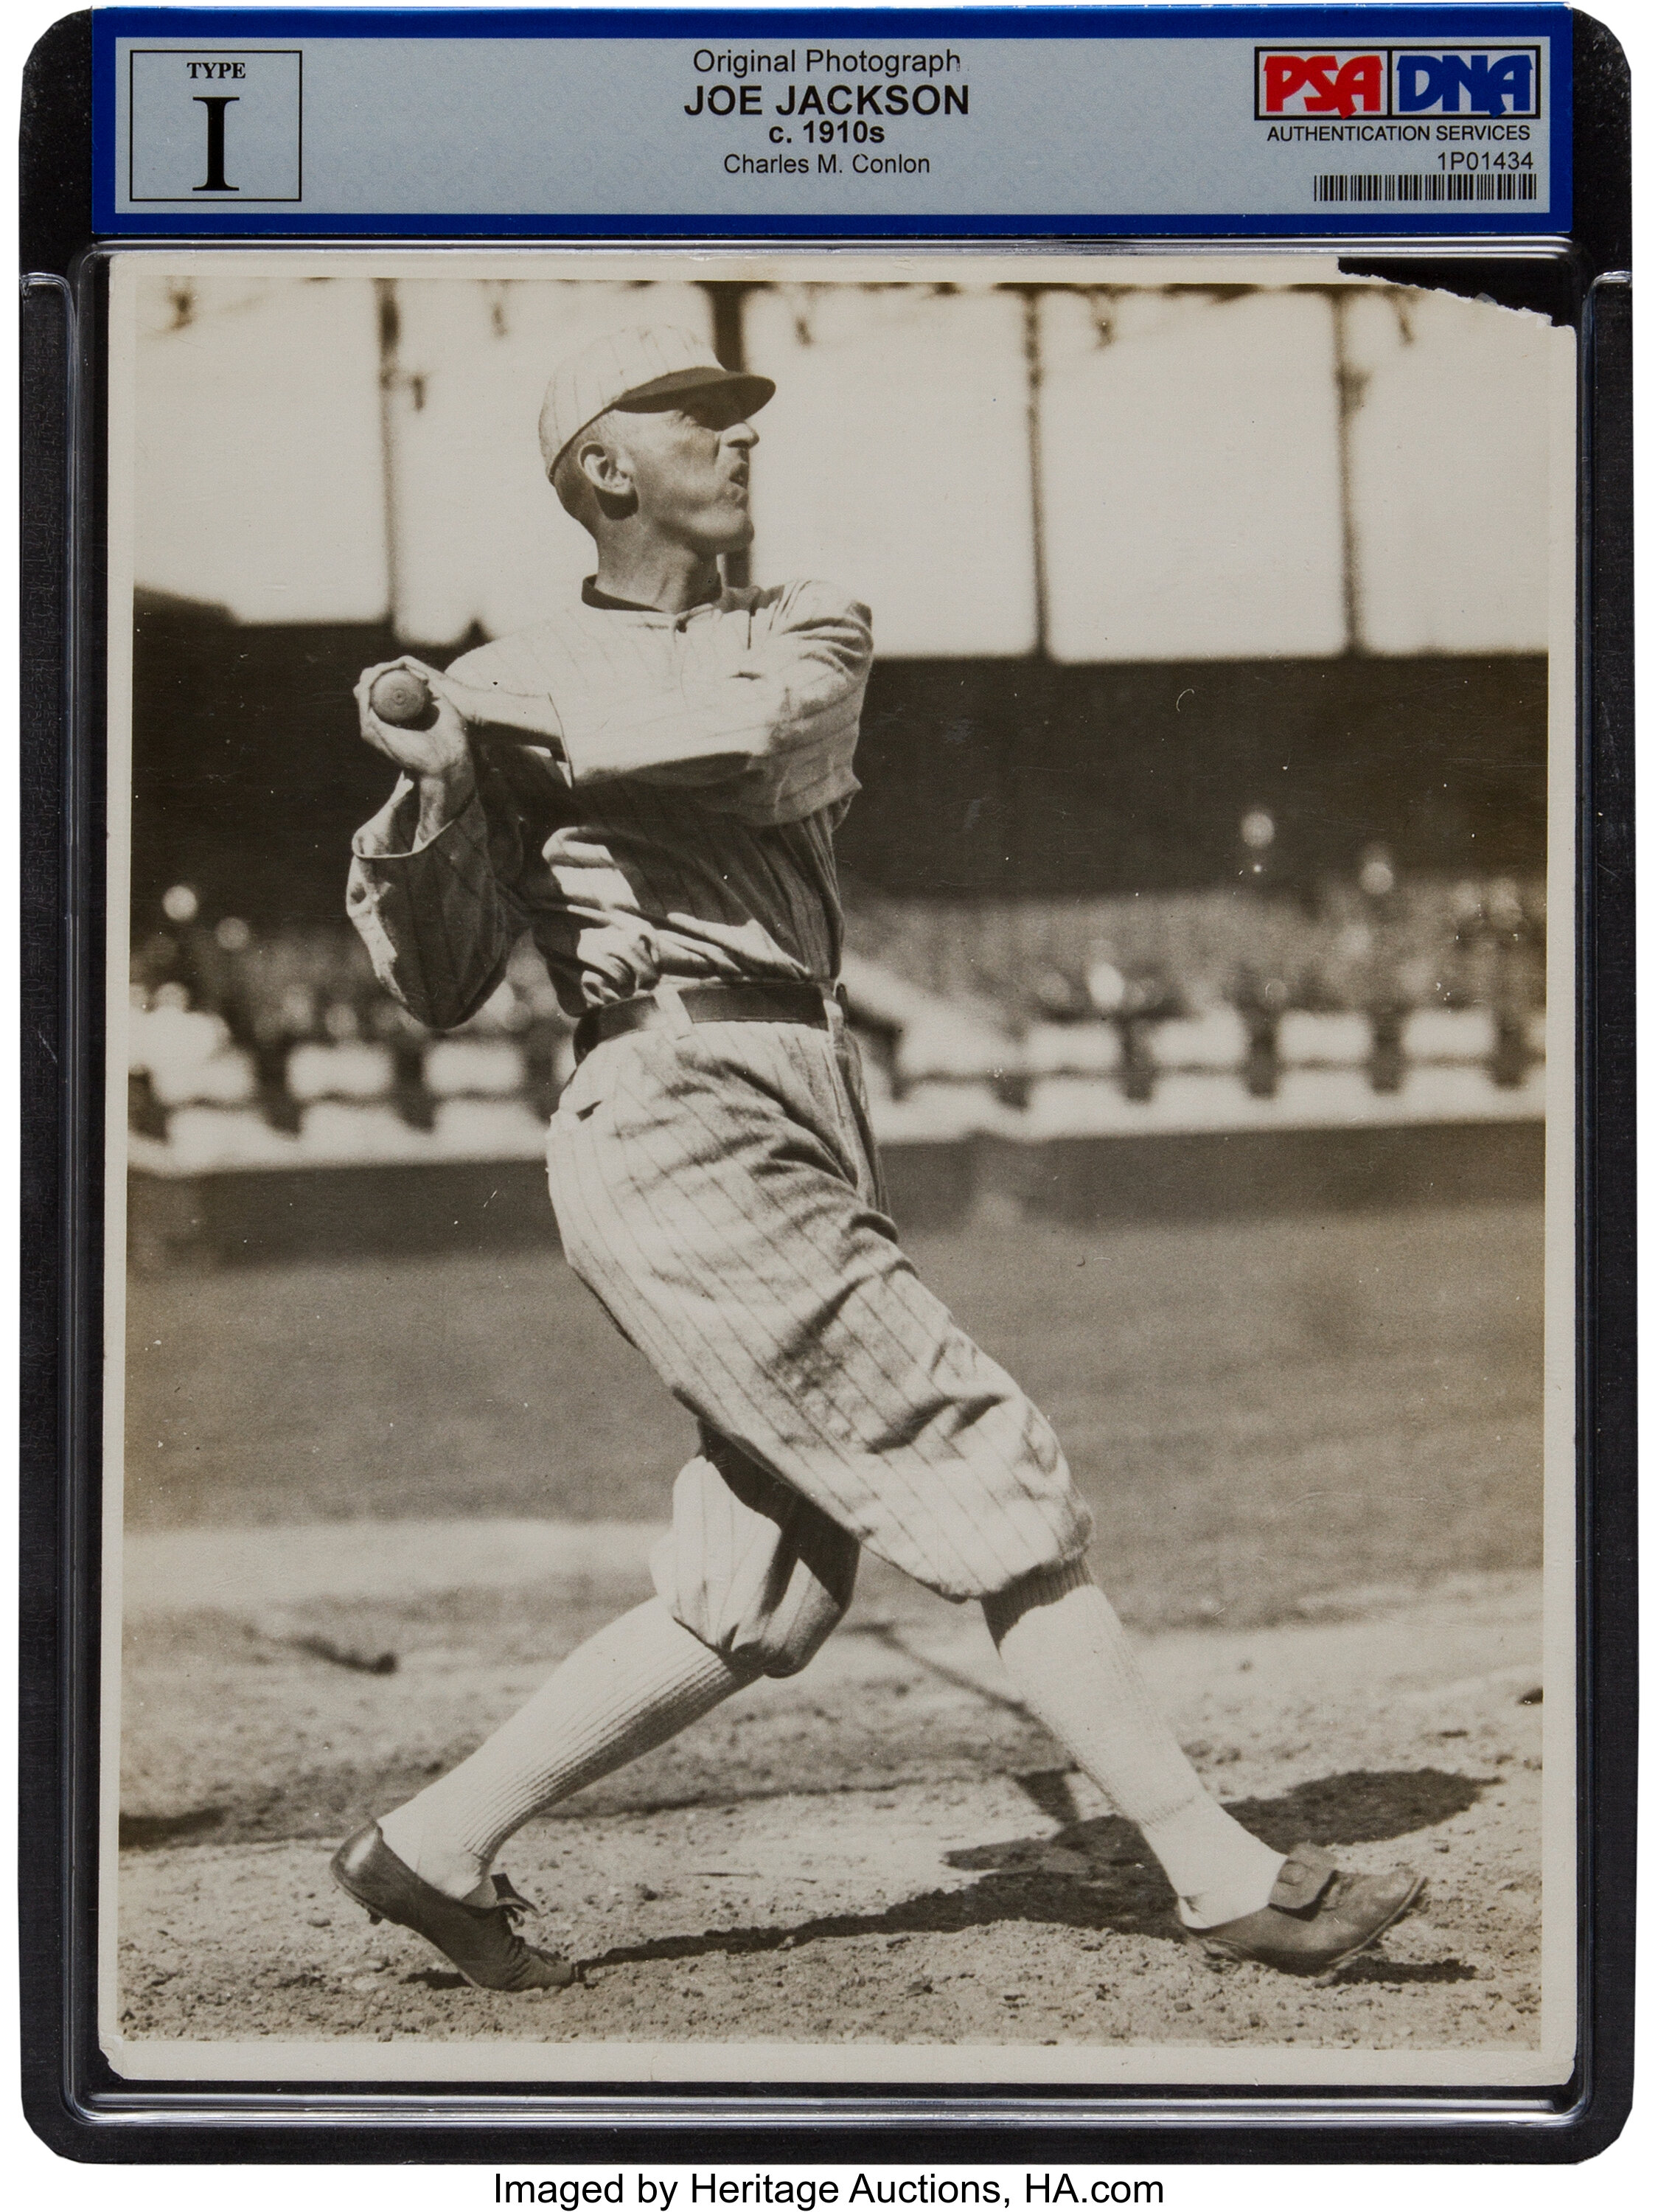 Shoeless' Joe Jackson baseball photo sells for auction record : NPR